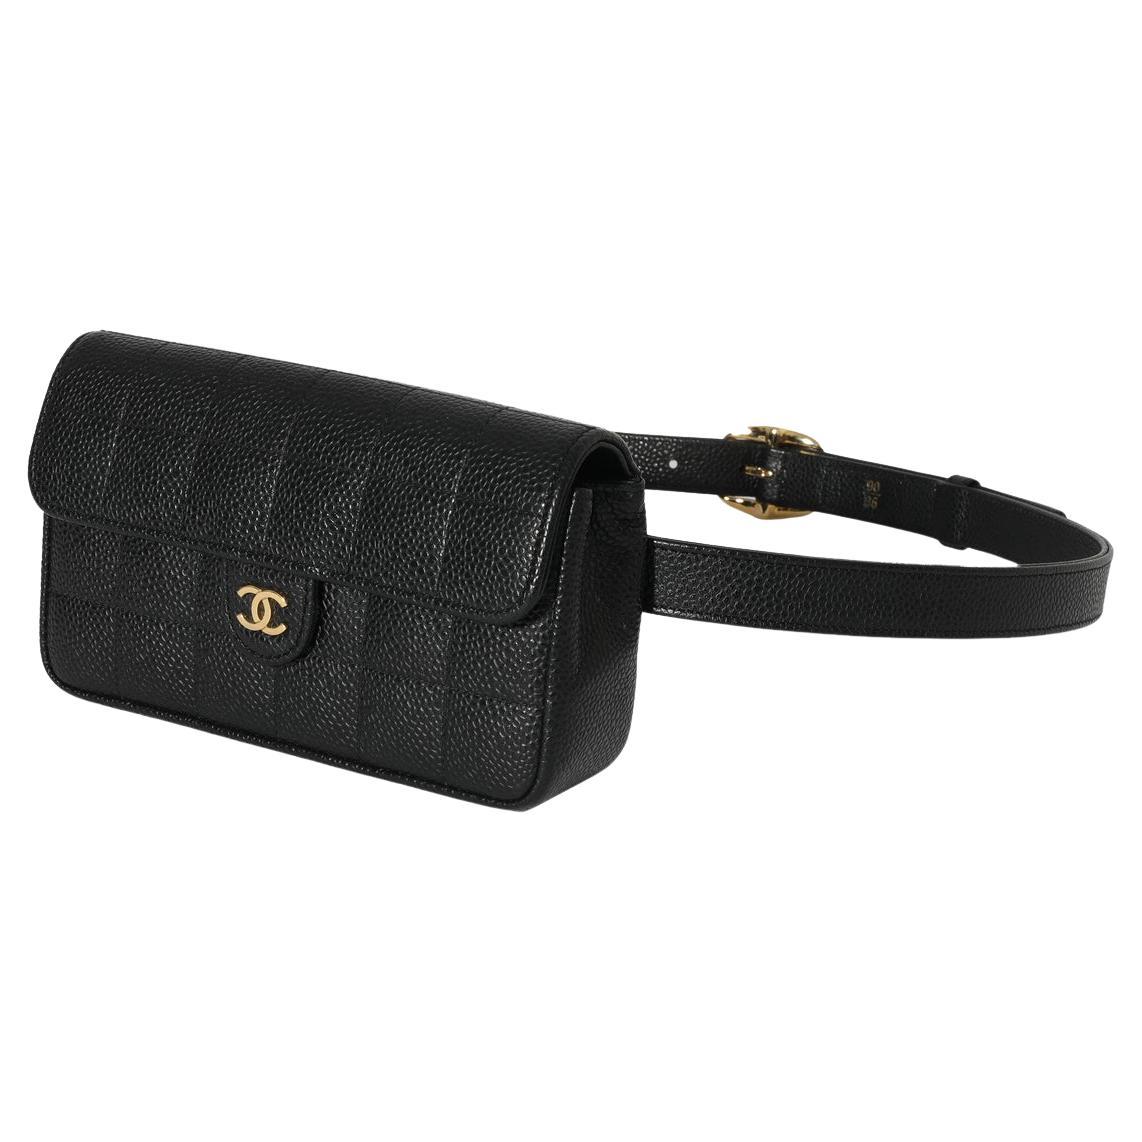 Chanel 19 Waist Bag - 6 For Sale on 1stDibs